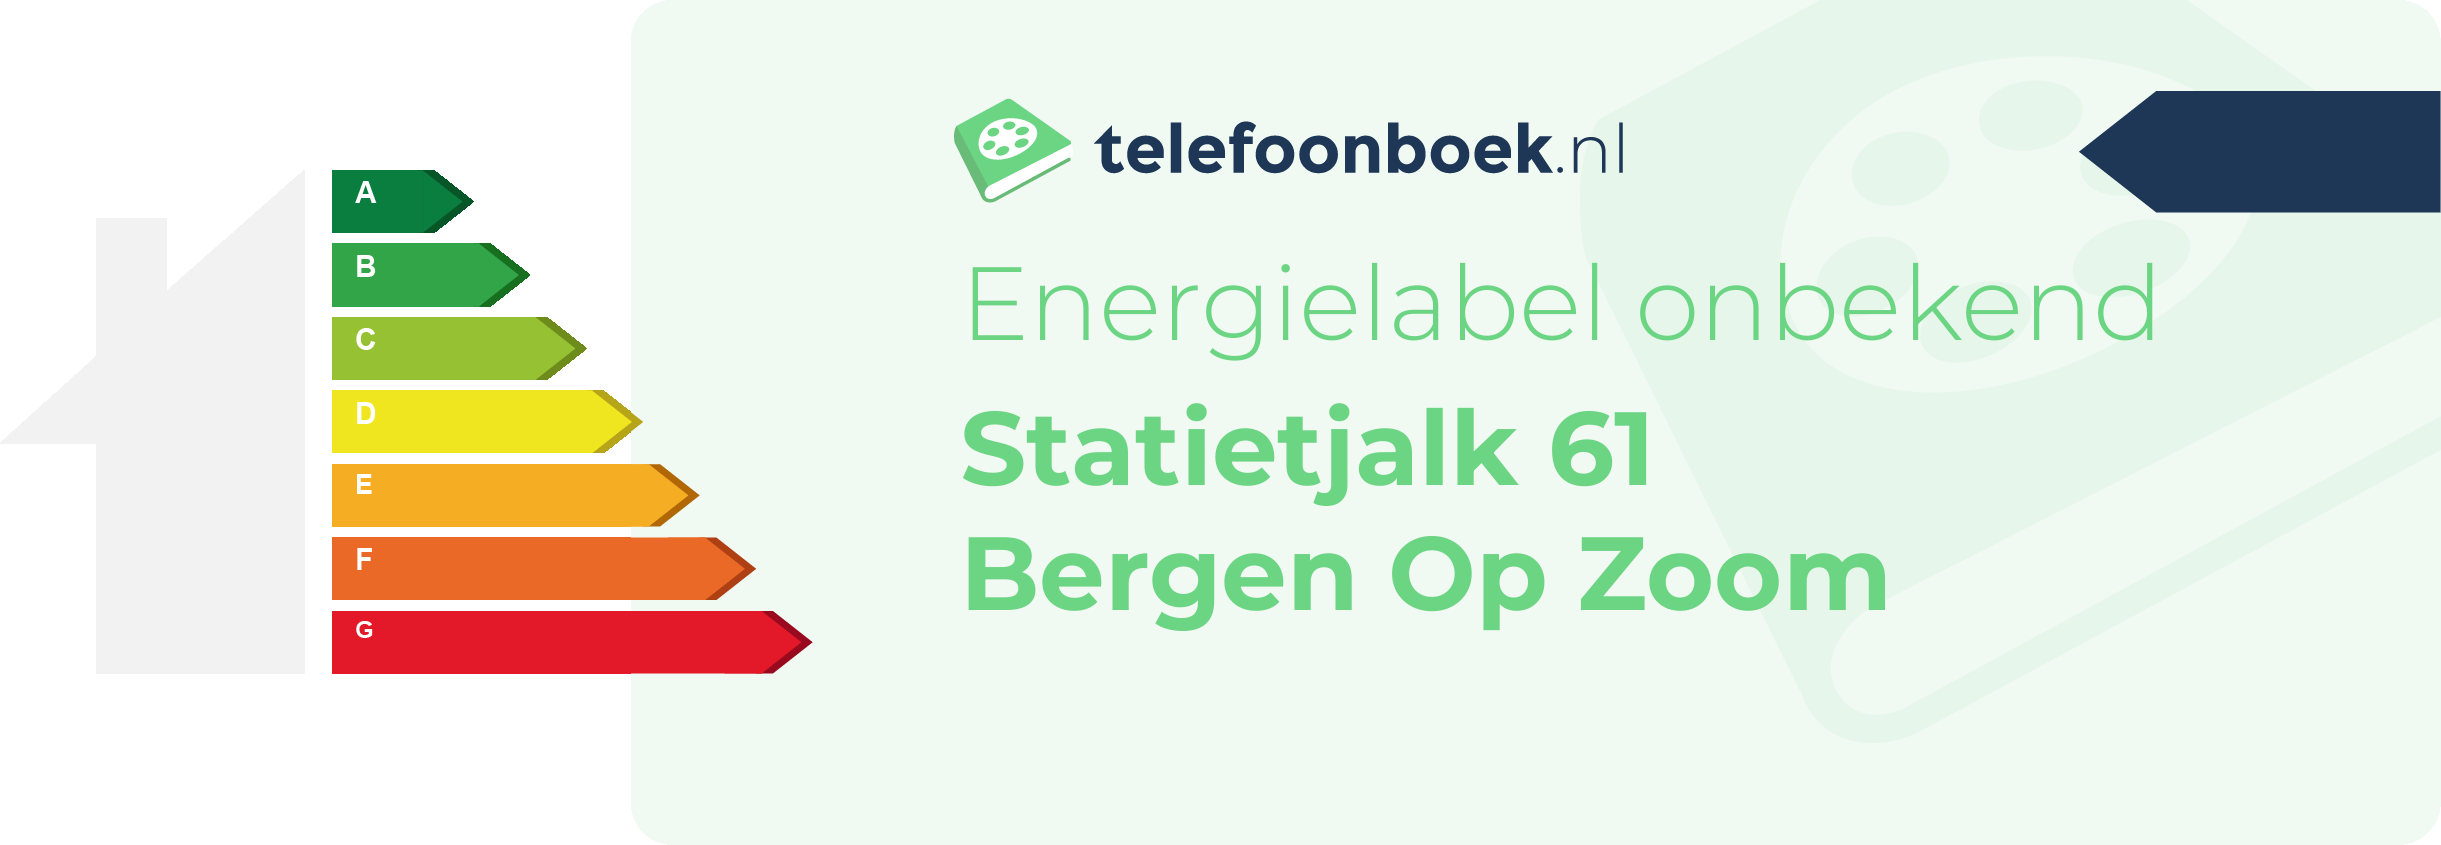 Energielabel Statietjalk 61 Bergen Op Zoom